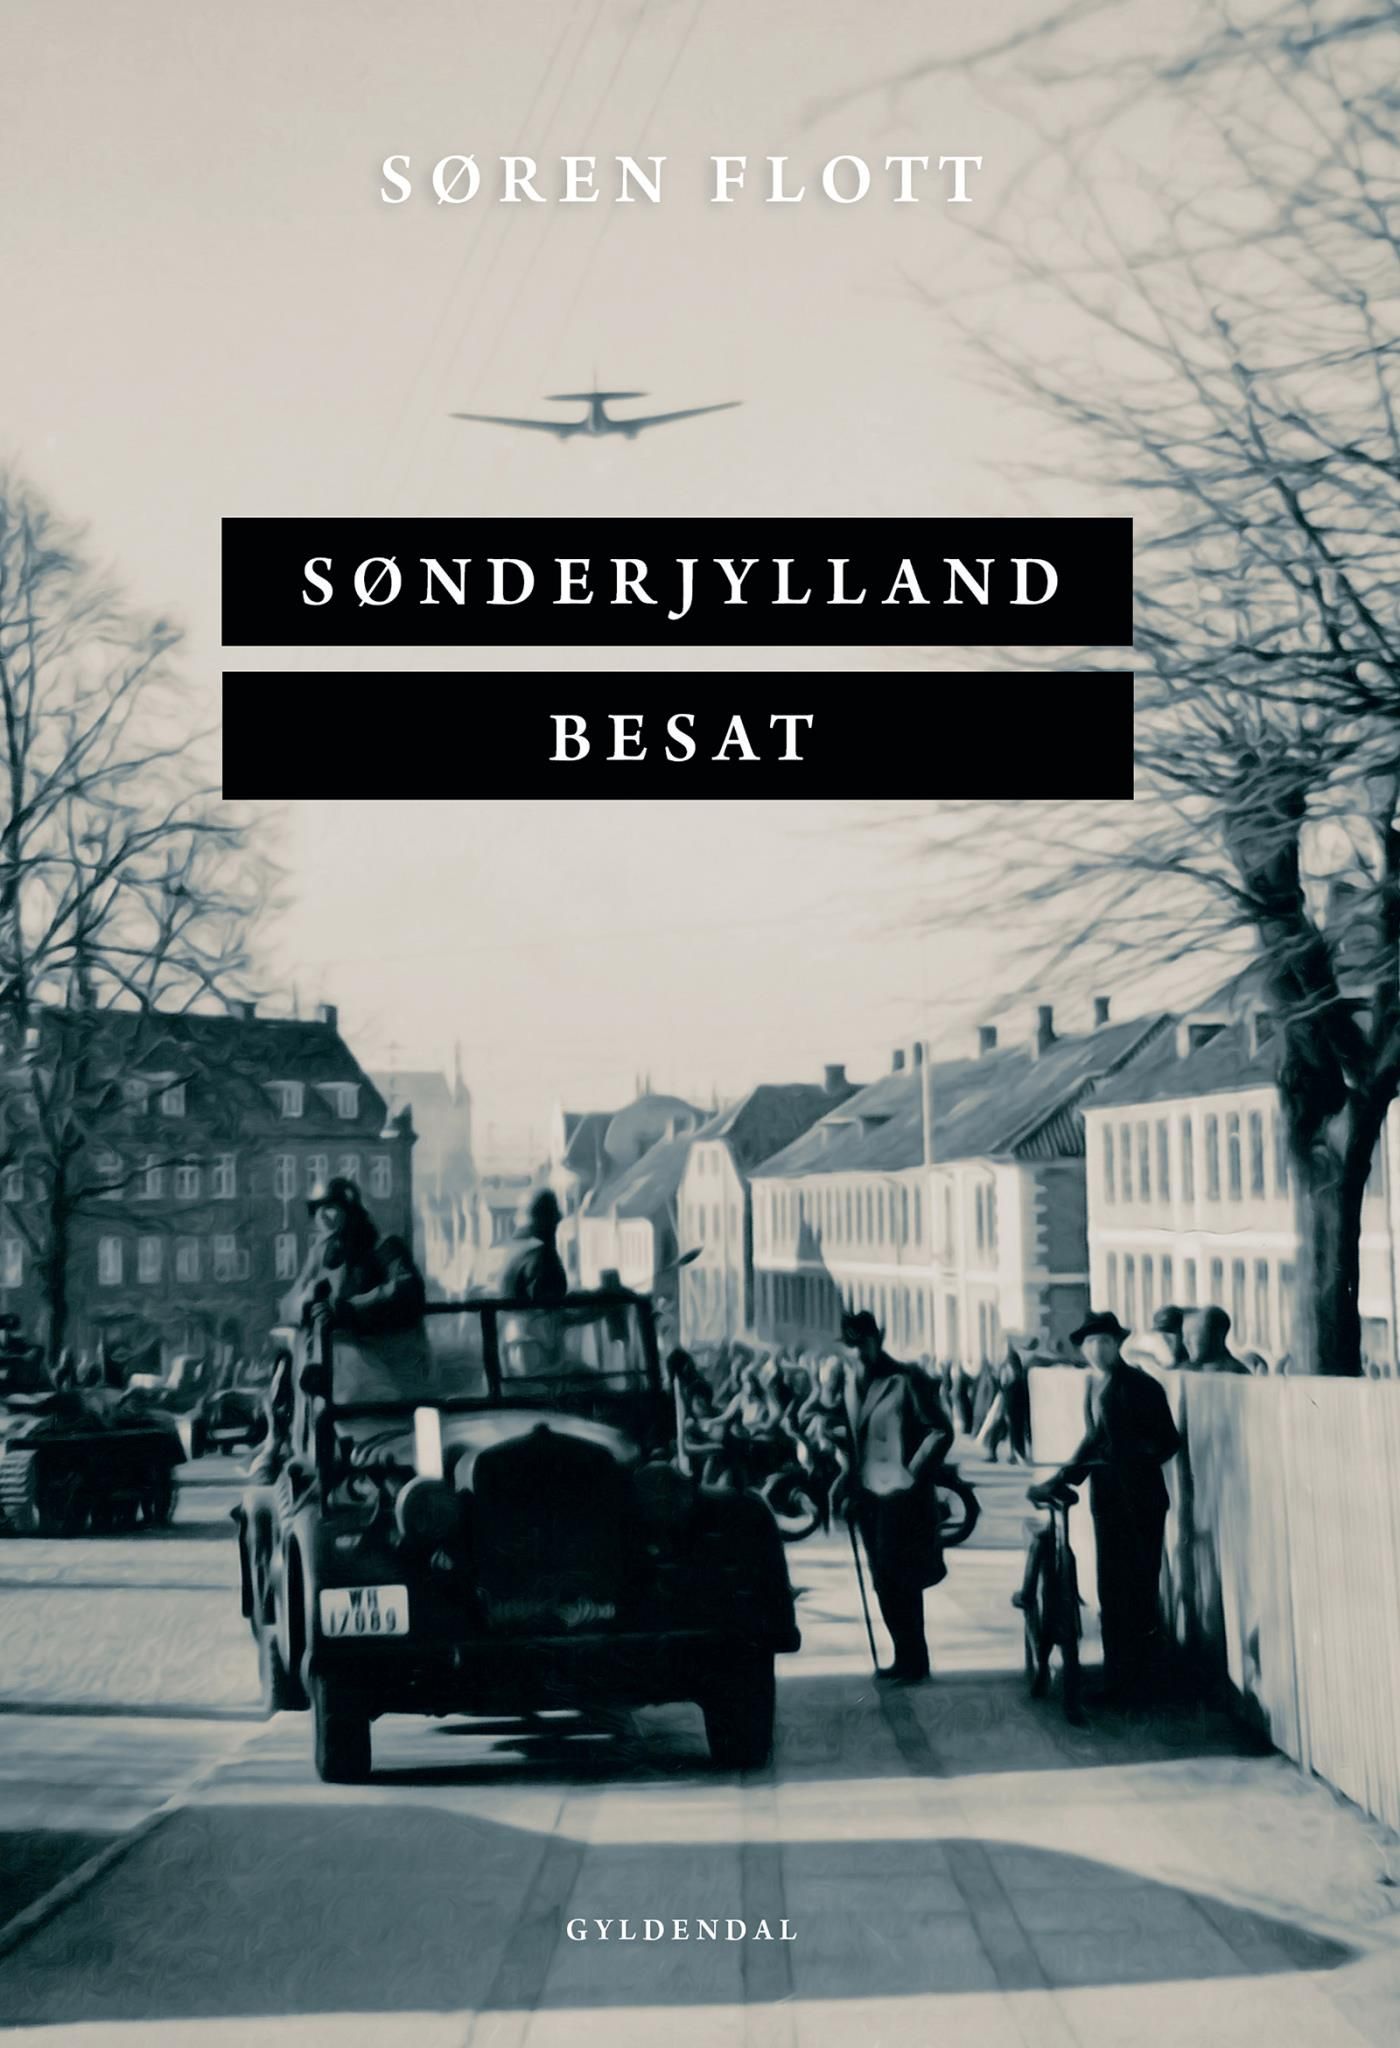 Sønderjylland besat, e-bog af Søren Flott